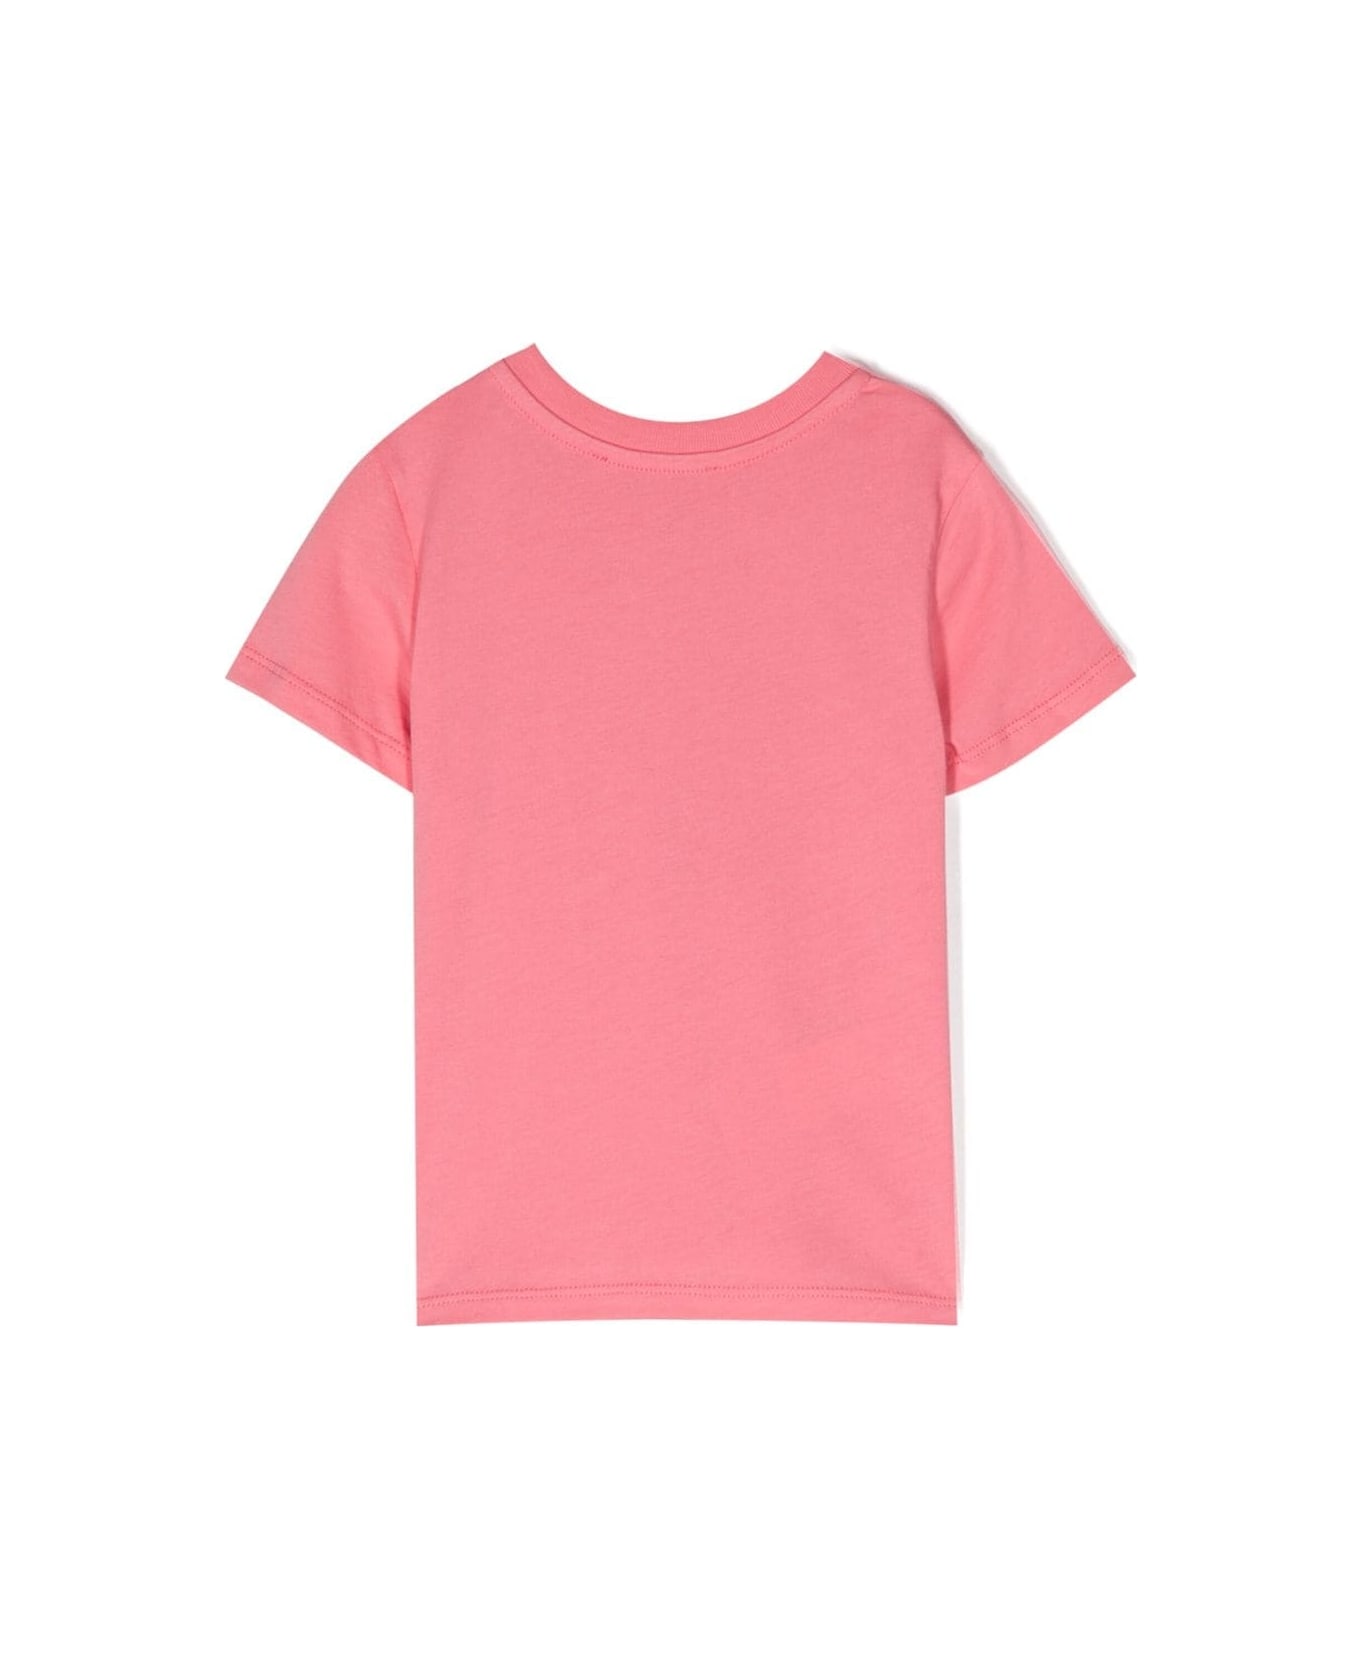 Marni Printed T-shirt - Pink